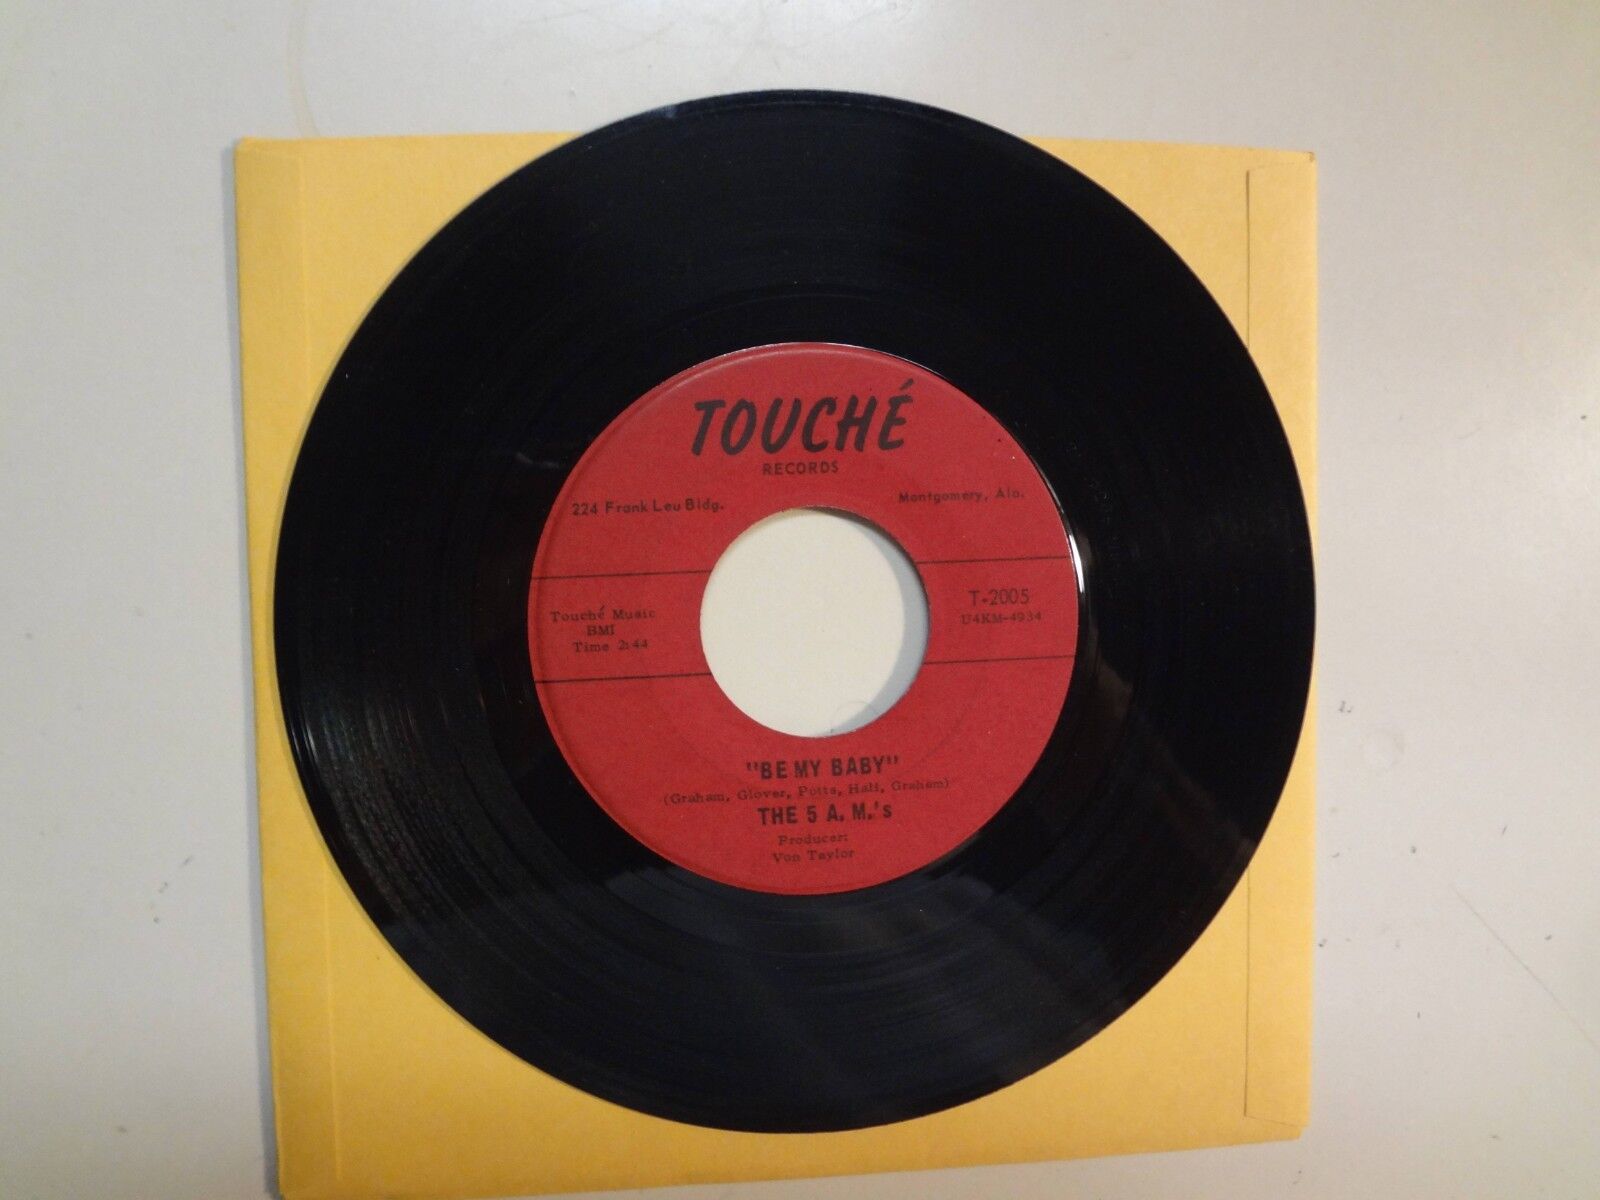 5 A.M.’S: Be My Baby 2:44- I’m The One 2:20-U.S. 7" 1967 Touche’ Records T-2005 